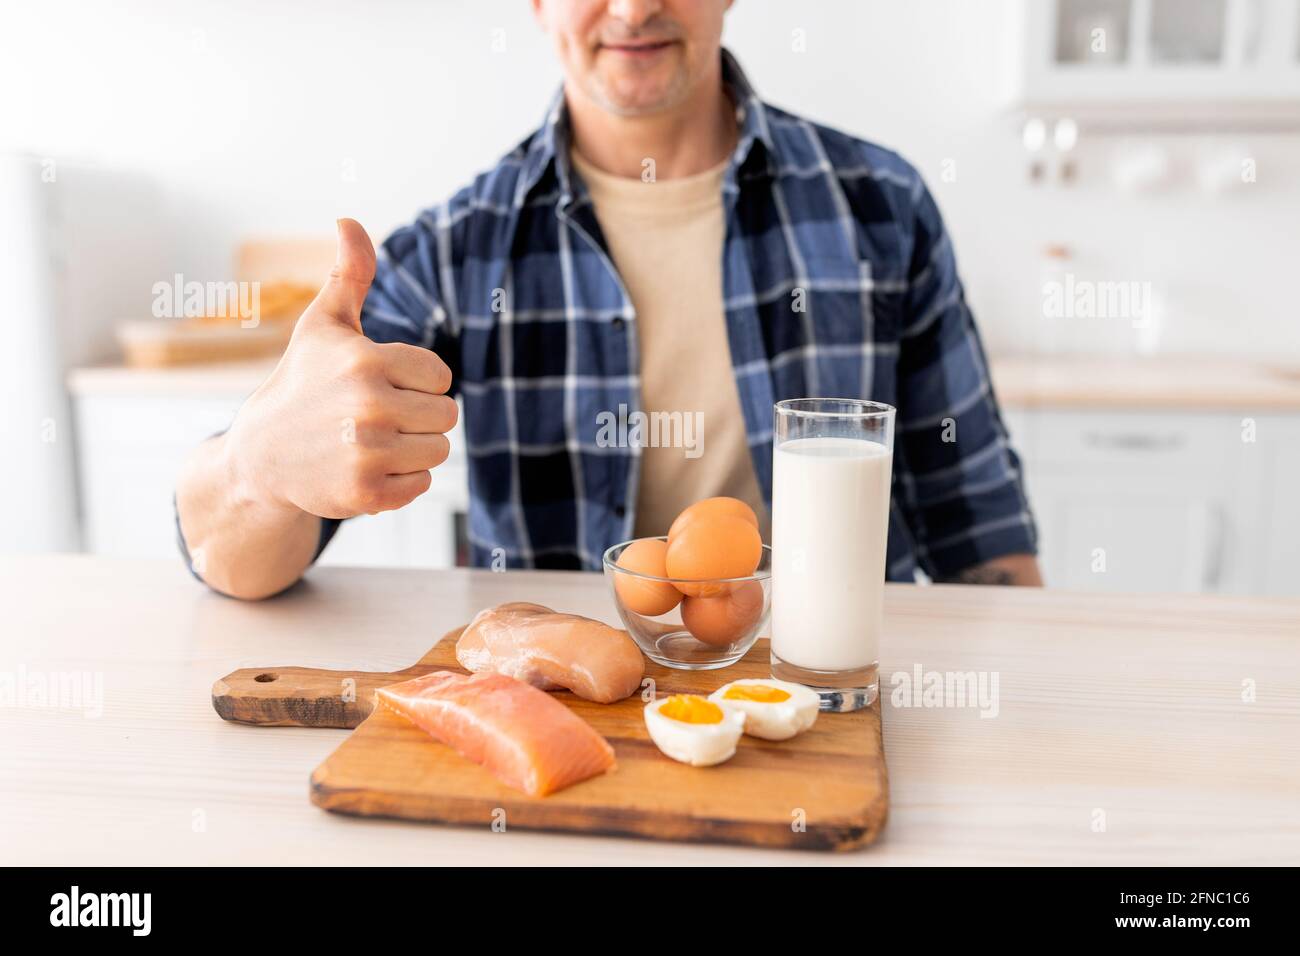 Ich mag gesunde Ernährung. Älterer Mann, der das Frühstück vorbereitet und Daumen, Milch, rohes Fleischfilet, Fisch und Eier zeigt Stockfoto